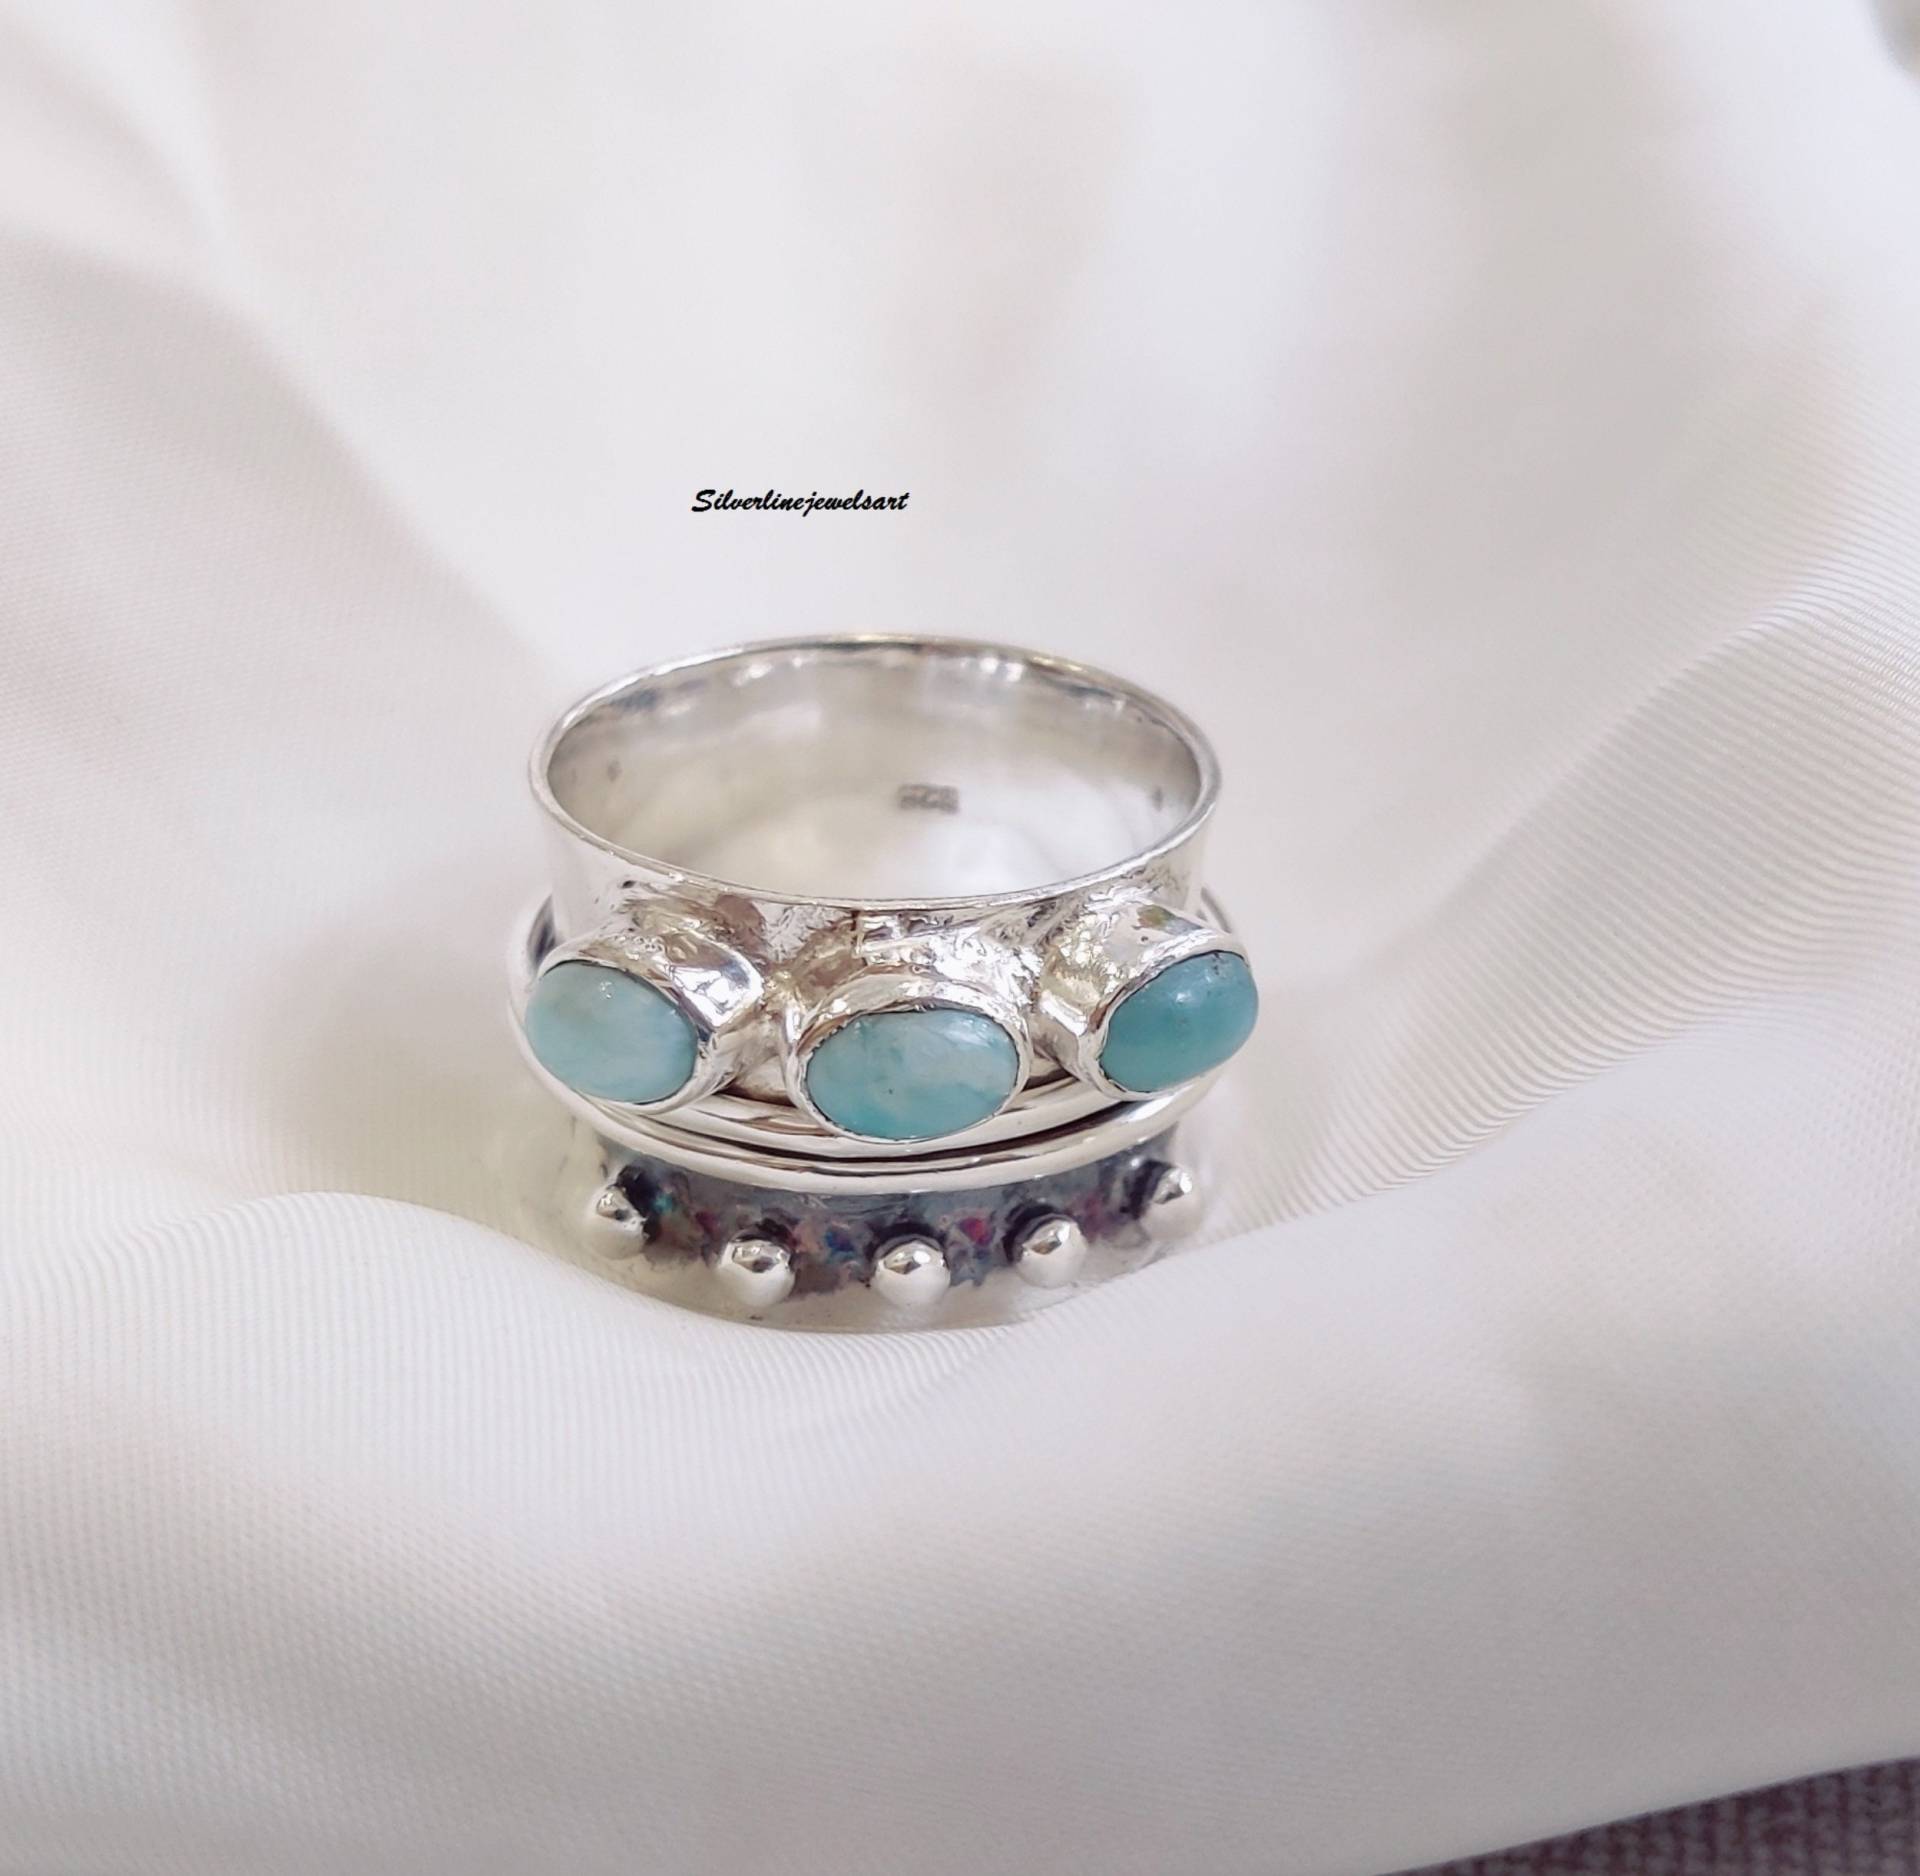 Gehämmert Larimar Ring 925 Sterling Silber, Spinner Ring, Handgemachter Statement Fidget Sorgen Daumen Frauen Geschenk von SilverlinejewelsArt